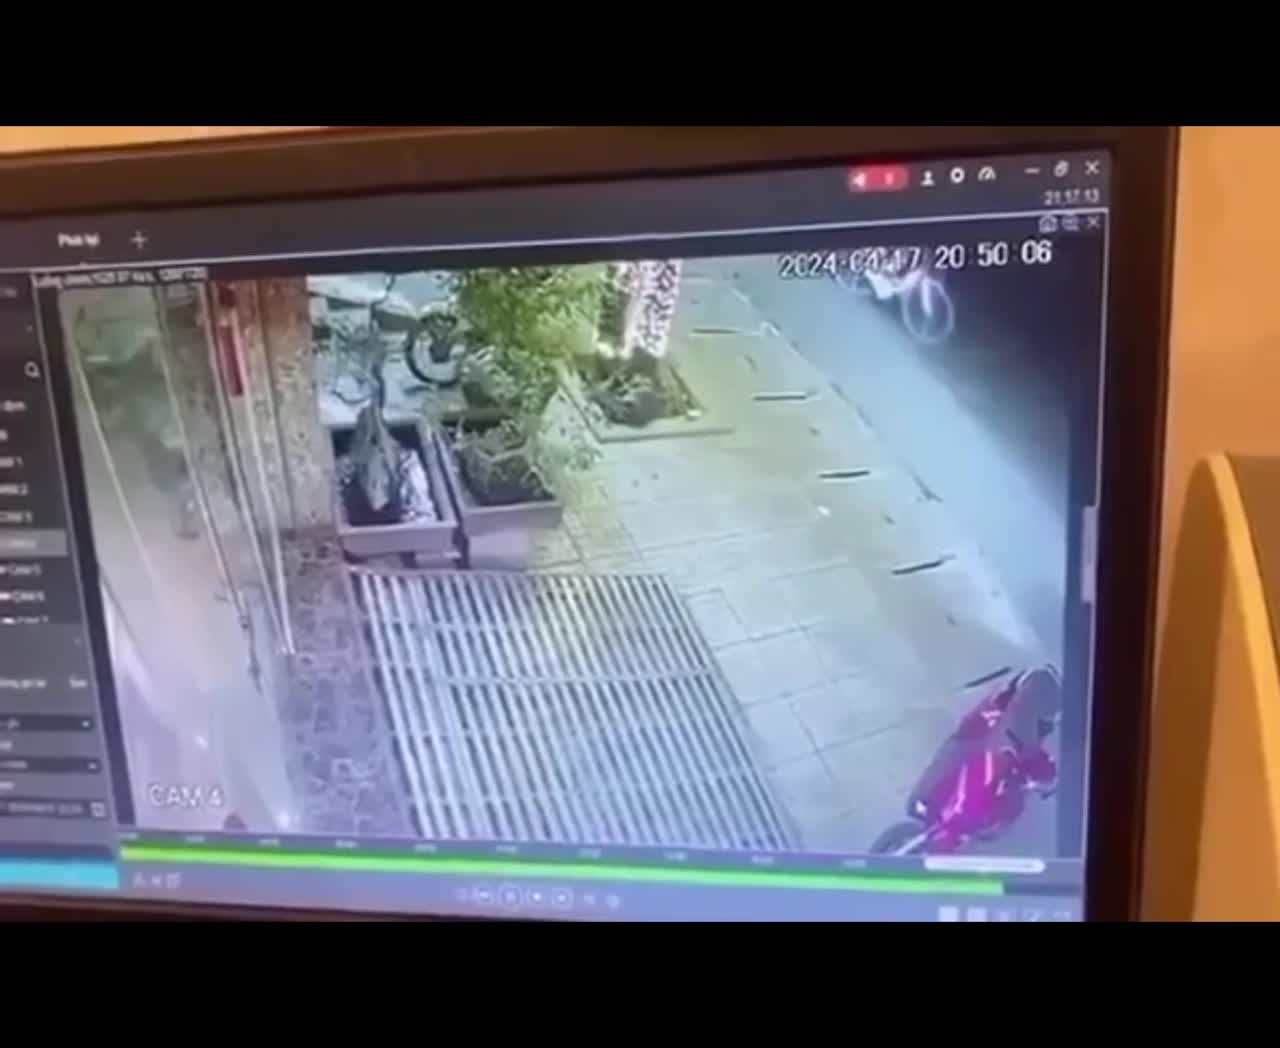 An ninh - Hình sự - Diễn biến vụ cướp tiệm vàng chỉ trong khoảng 10 giây tại Hà Tĩnh